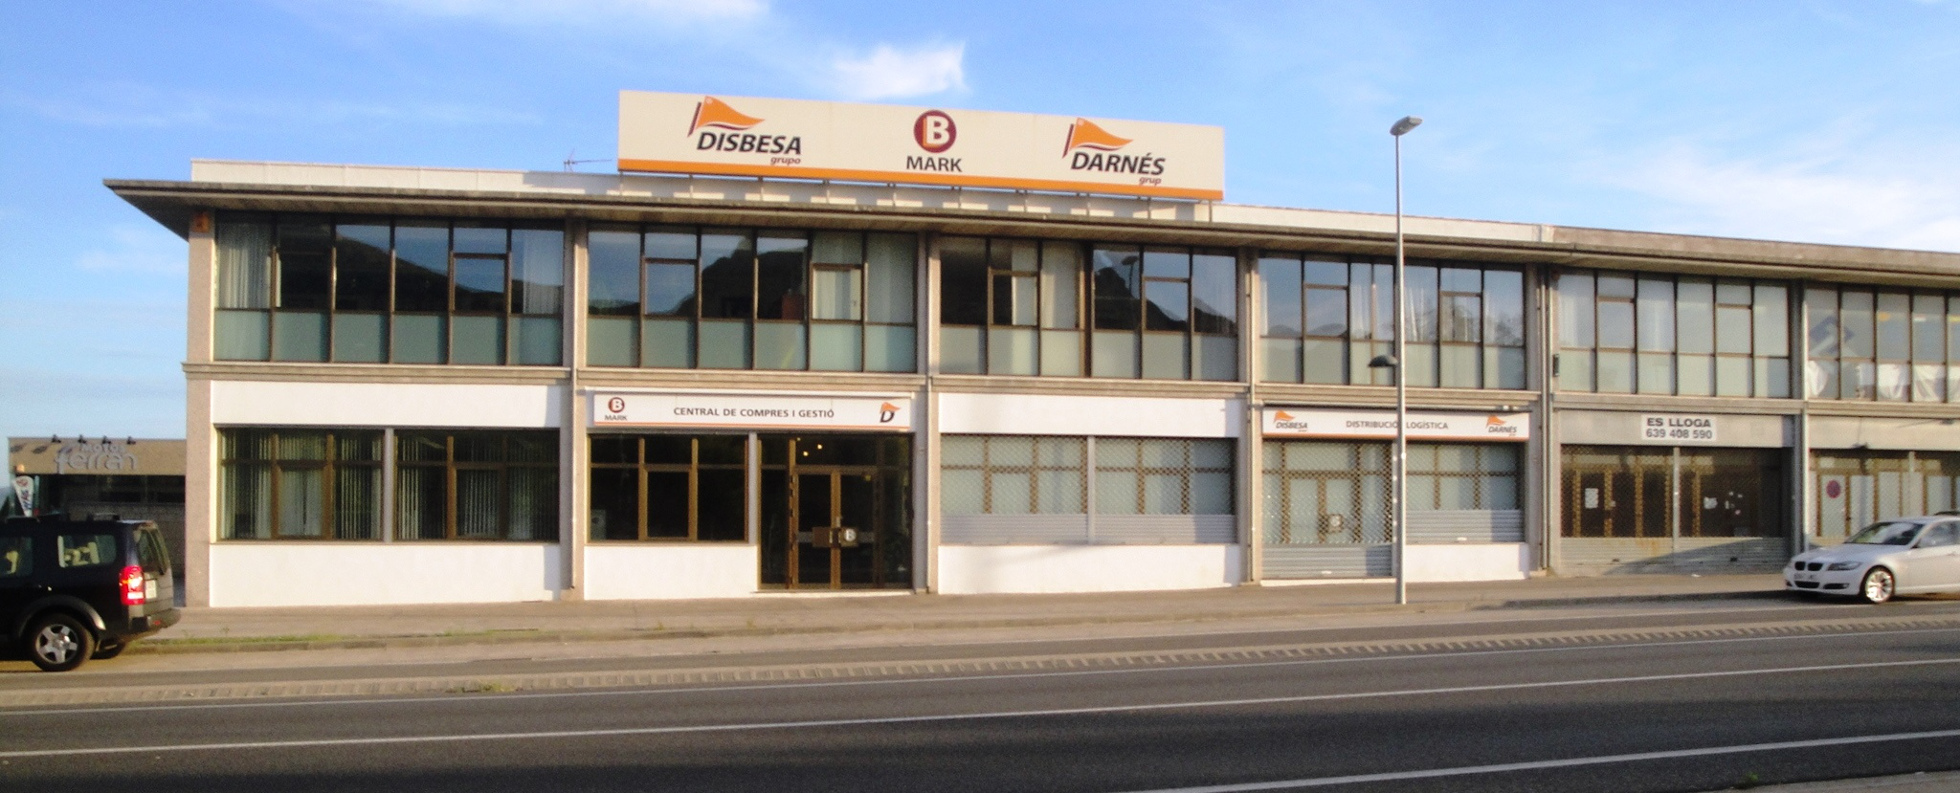 Façana edifici oficines 1